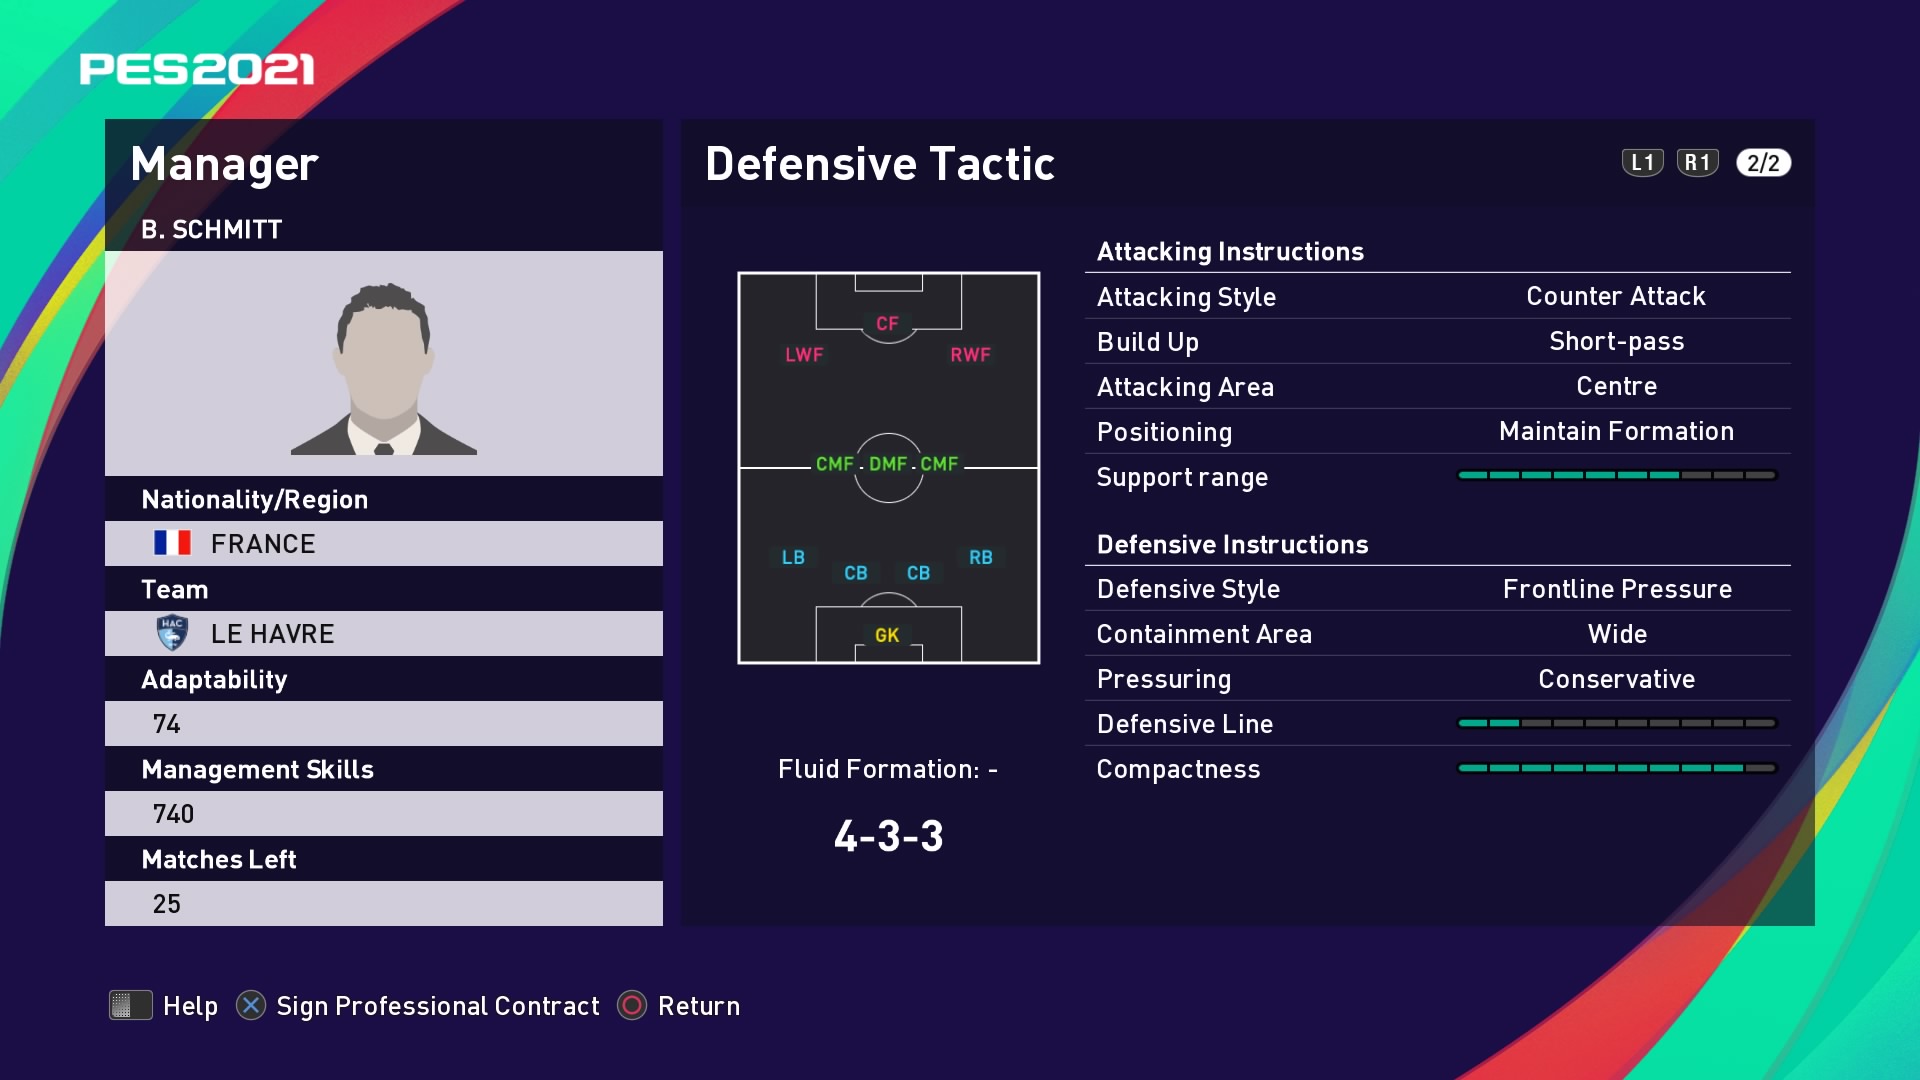 B. Schmitt (Paul Le Guen) Defensive Tactic in PES 2021 myClub